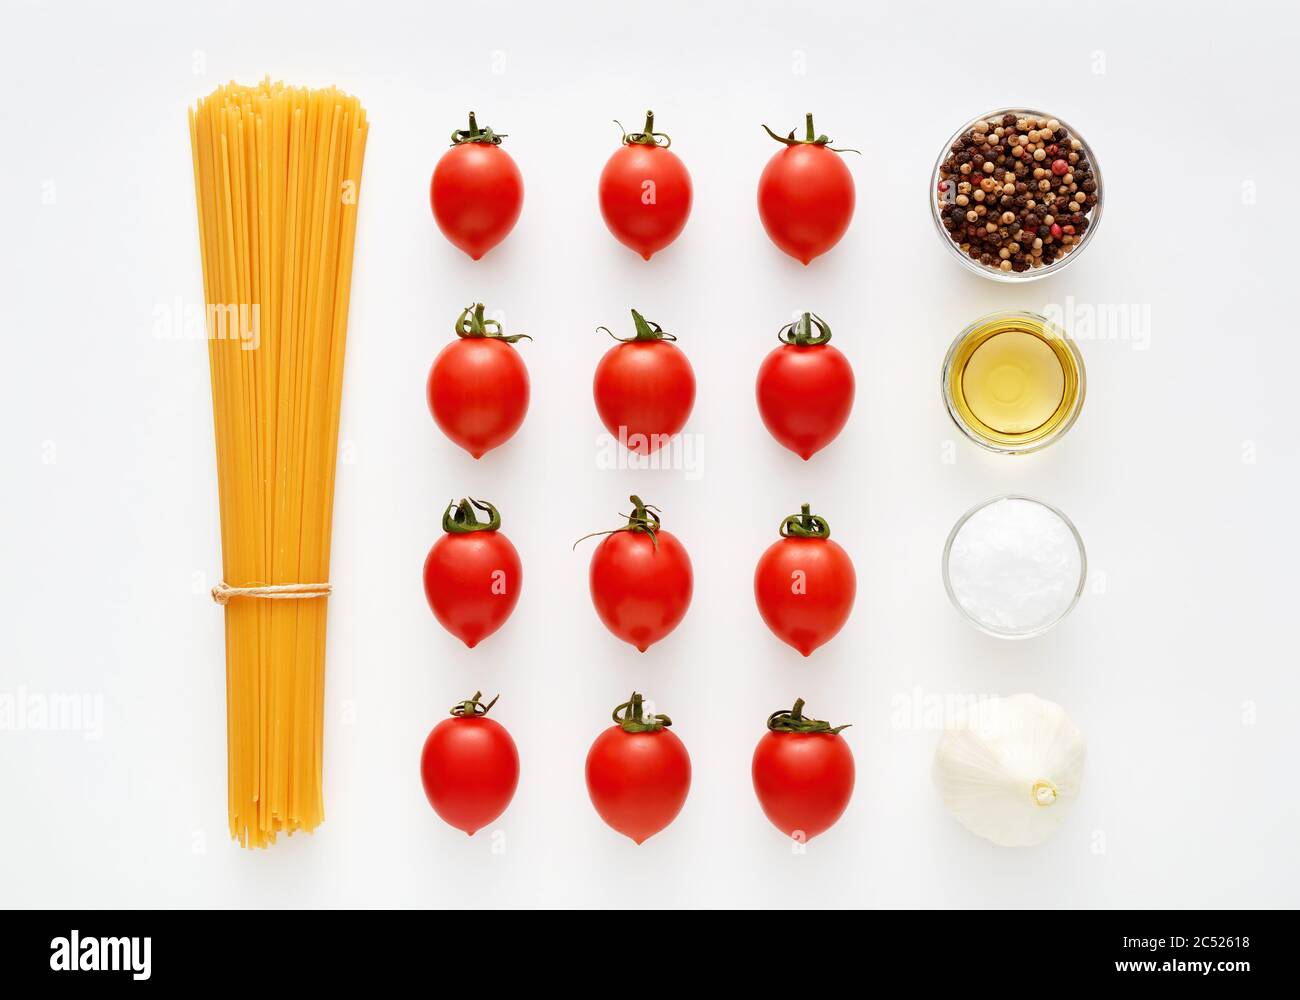 Spaghetti crudi con pomodori, aglio, pepe, sale e olio d'oliva su fondo bianco. Preparazione della pasta e ricetta della salsa. Foto Stock